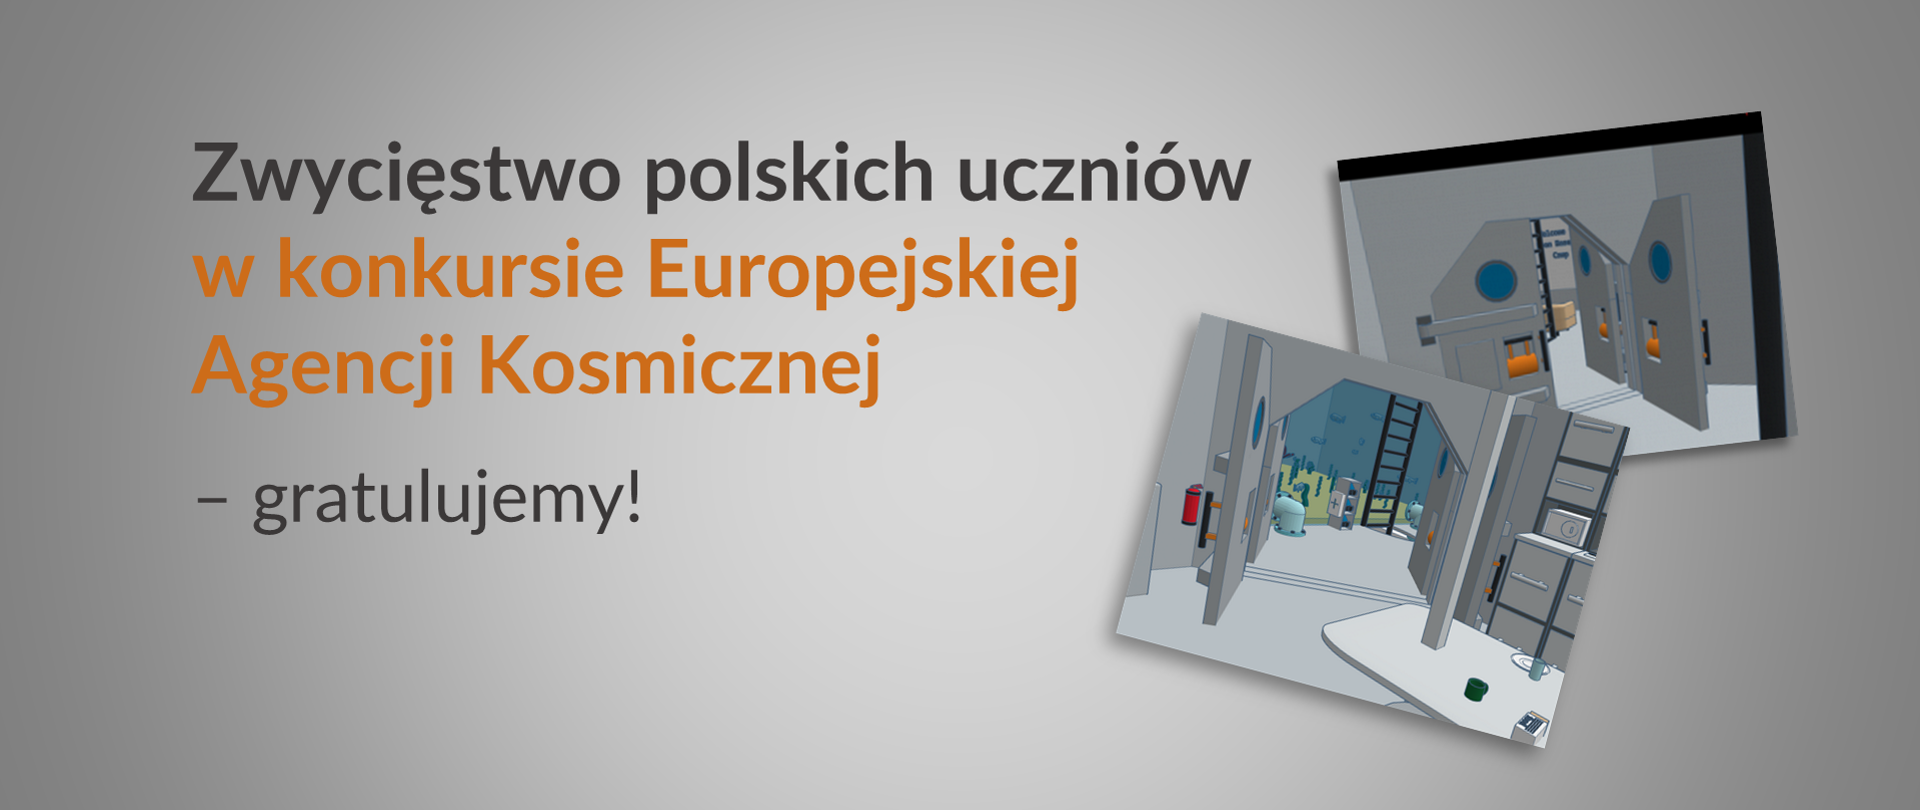 Plansza informacyjna. Na szarym tle ciemny napis: Zwycięstwo polskich uczniów w konkursie Europejskiej Agencji Kosmicznej - gratulujemy!